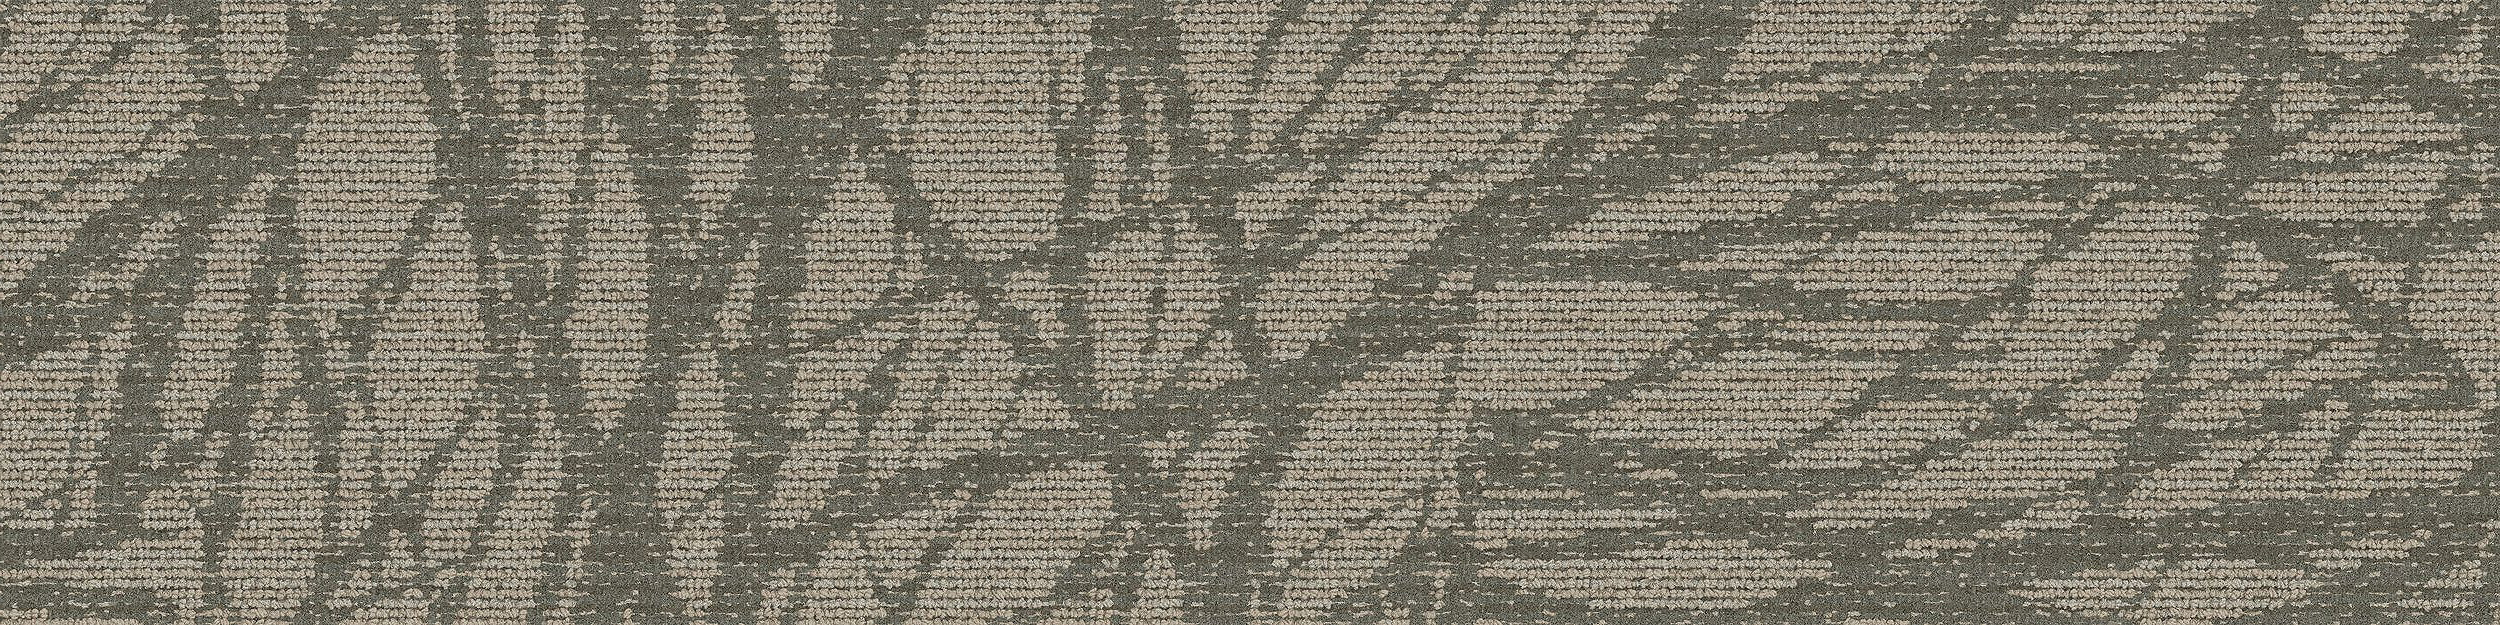 GN161 Carpet Tile In Pewter imagen número 4